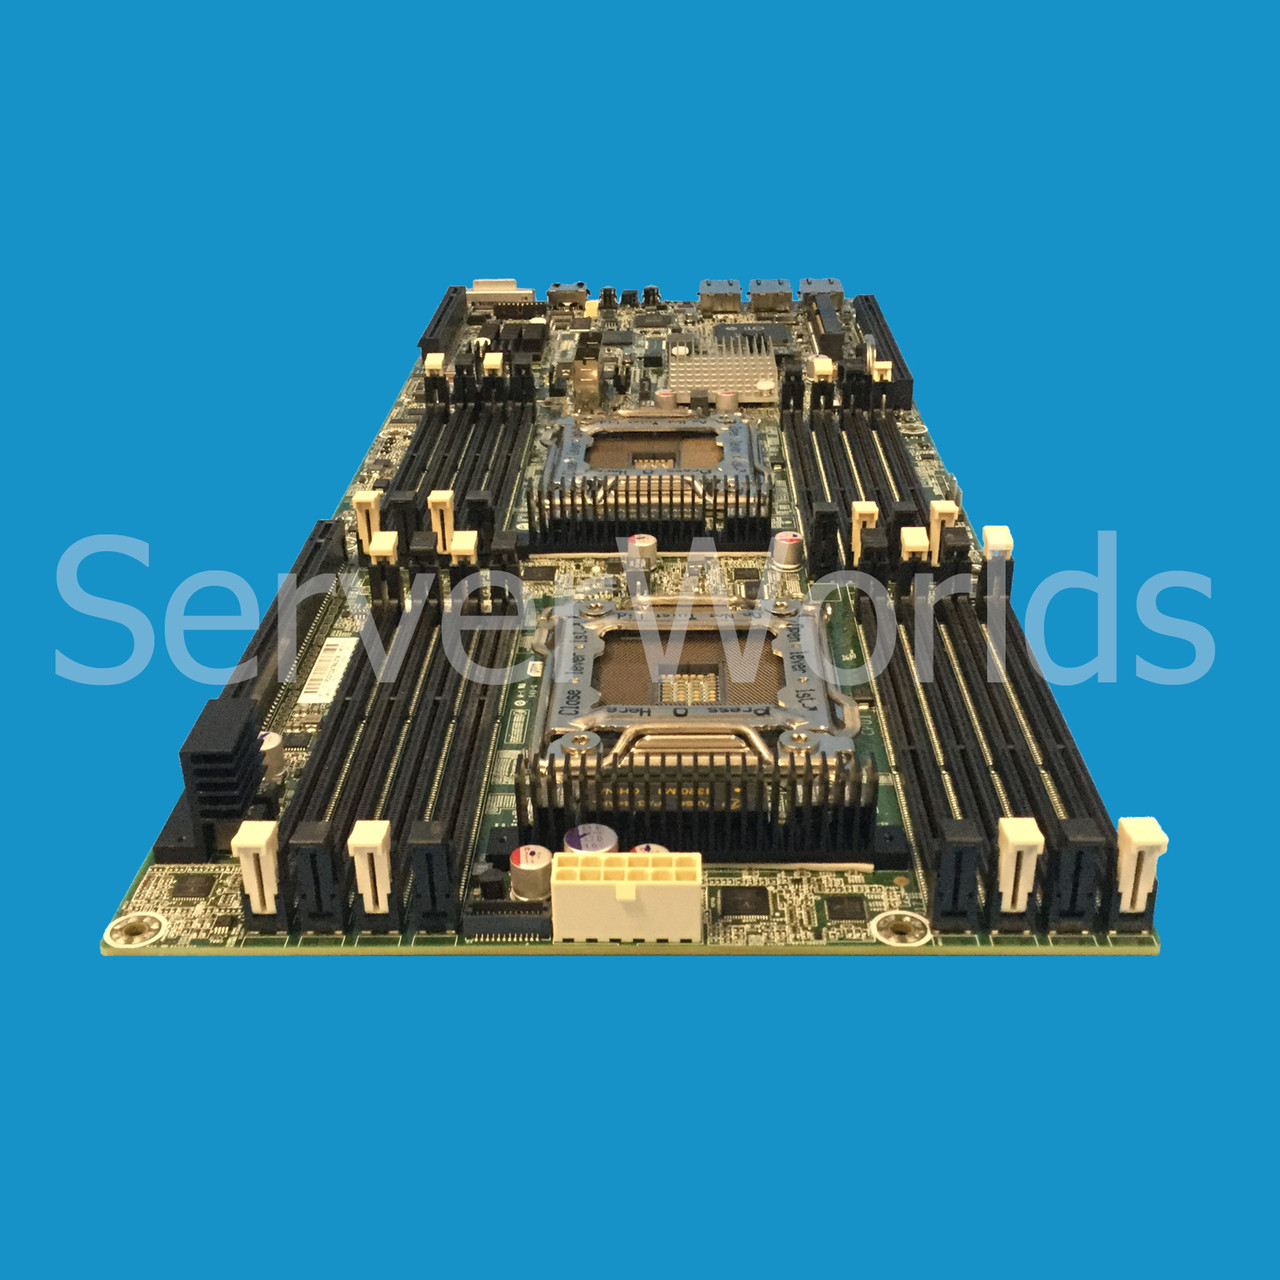 HPe 733171-001 SL2x0s Gen8 System Board Rev OA 650050-004